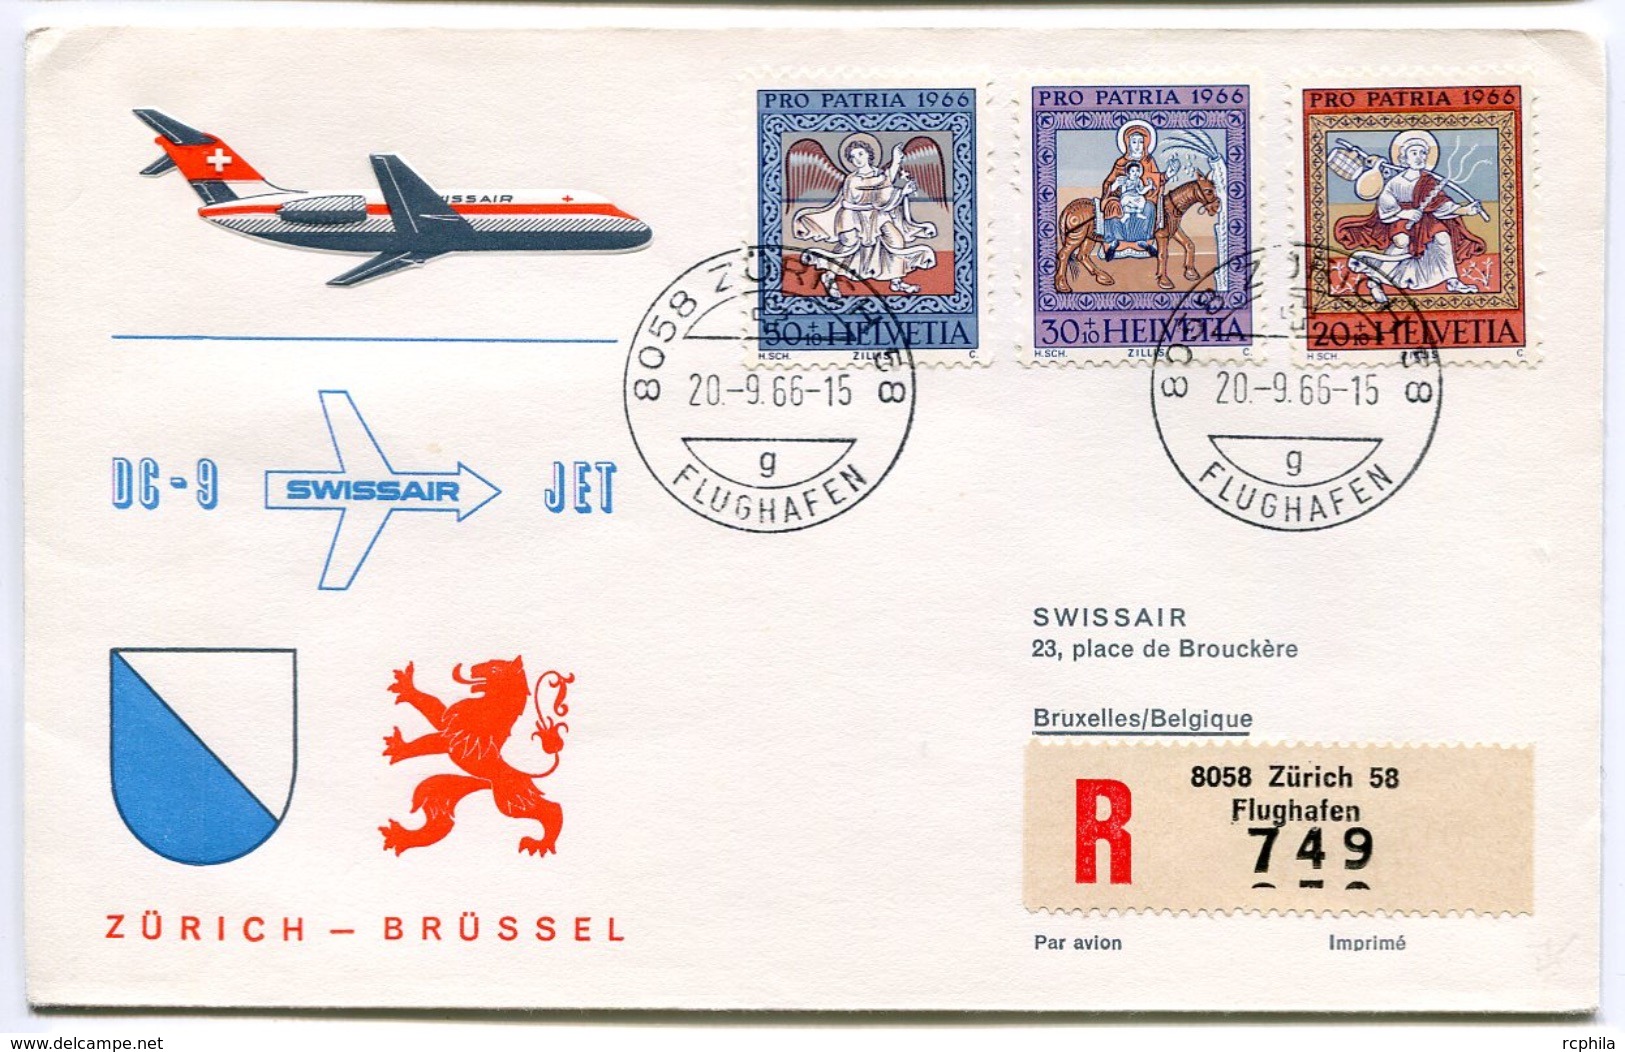 RC 6633 SUISSE 1966 1er VOL SWISSAIR ZURICH - BRUSSEL BELGIQUE DC-9 FFC LETTRE COVER - Premiers Vols